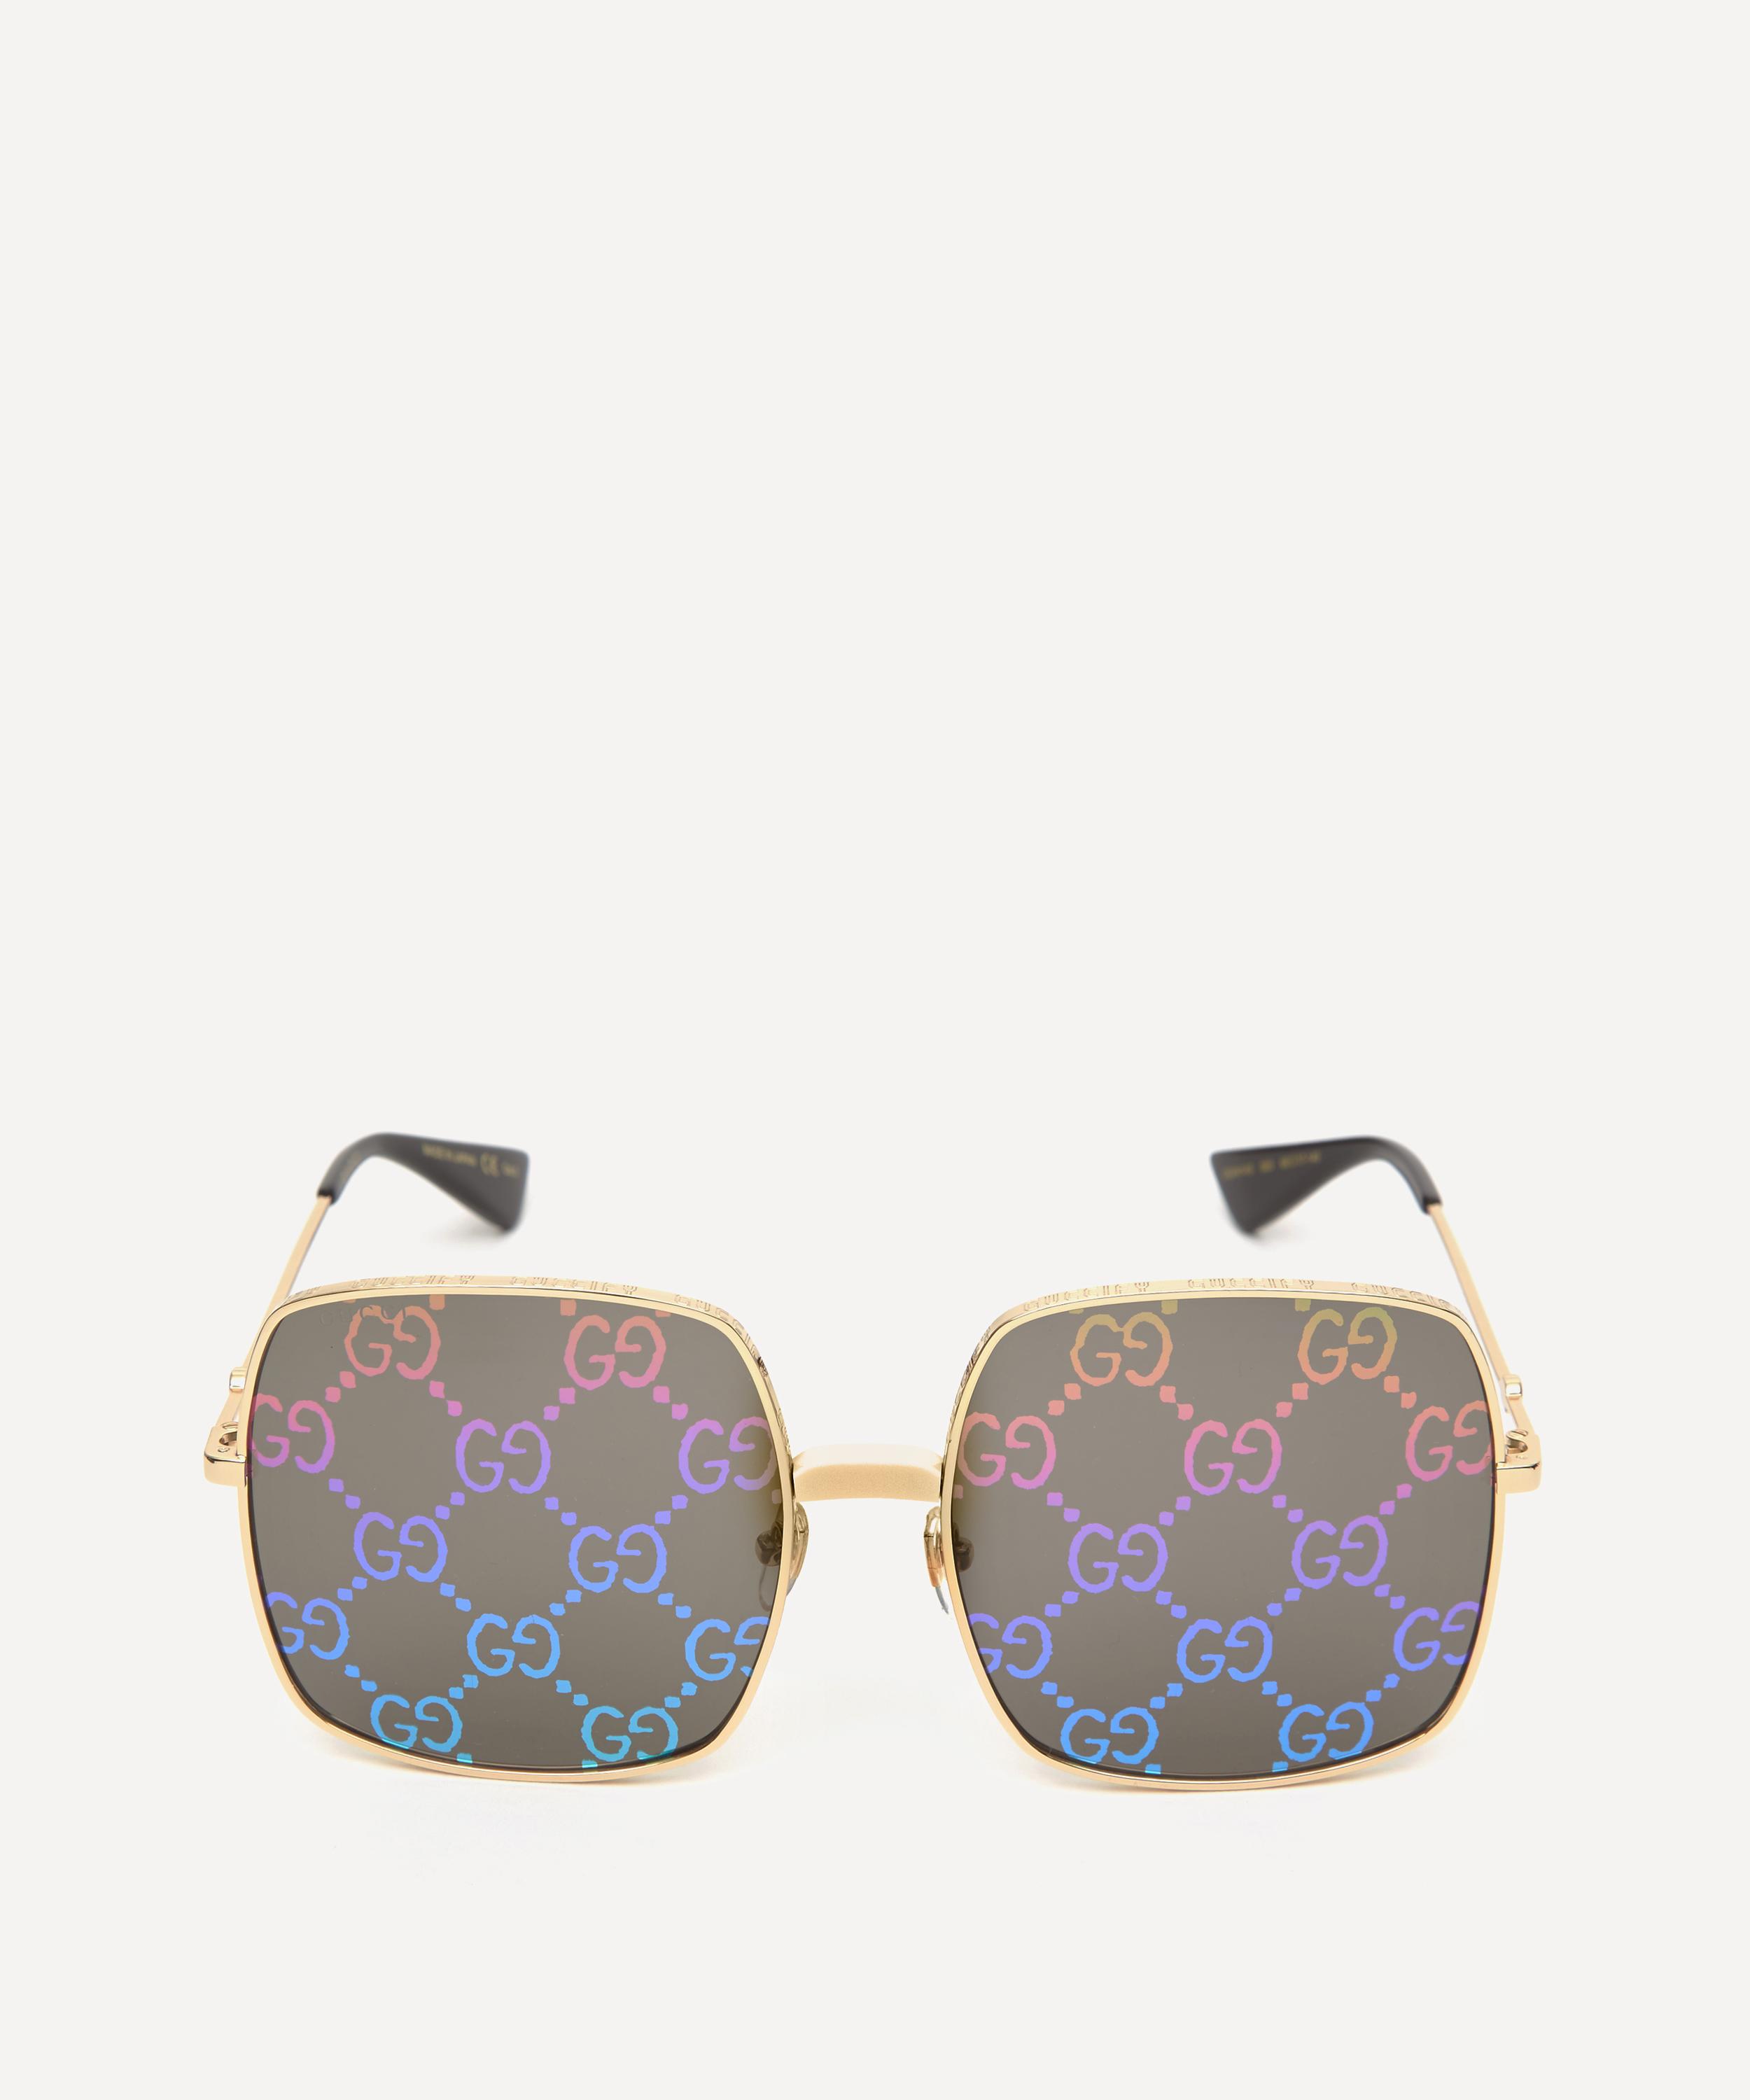 gucci holographic sunglasses